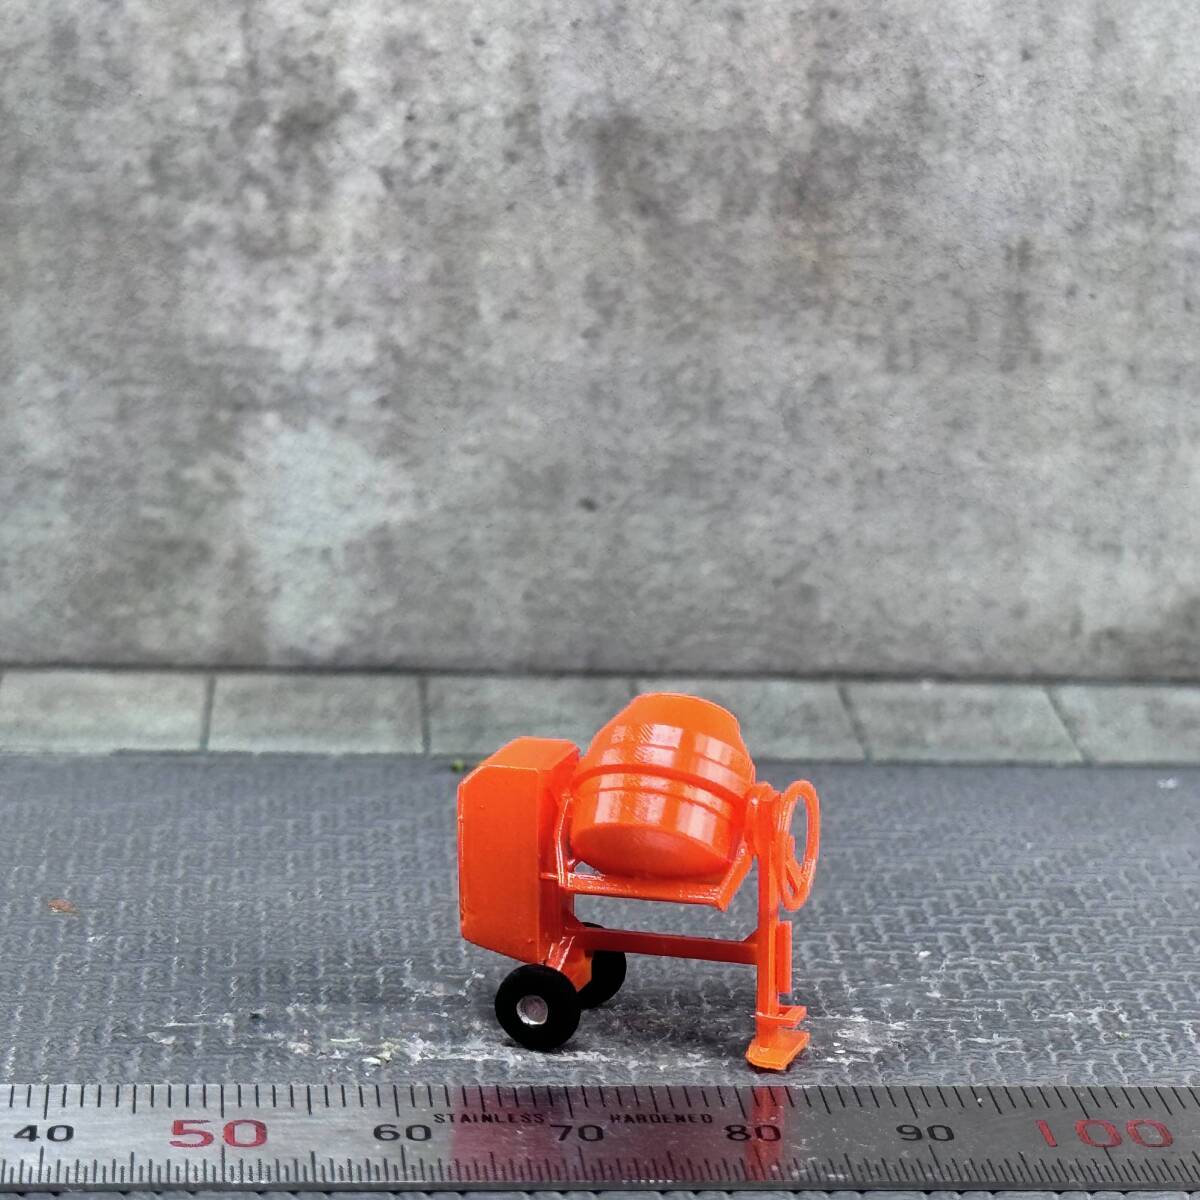 【MC-250】1/64 スケール コンクリートミキサー 橙 セメント フィギュア ミニチュア ジオラマ ミニカー トミカ_画像2